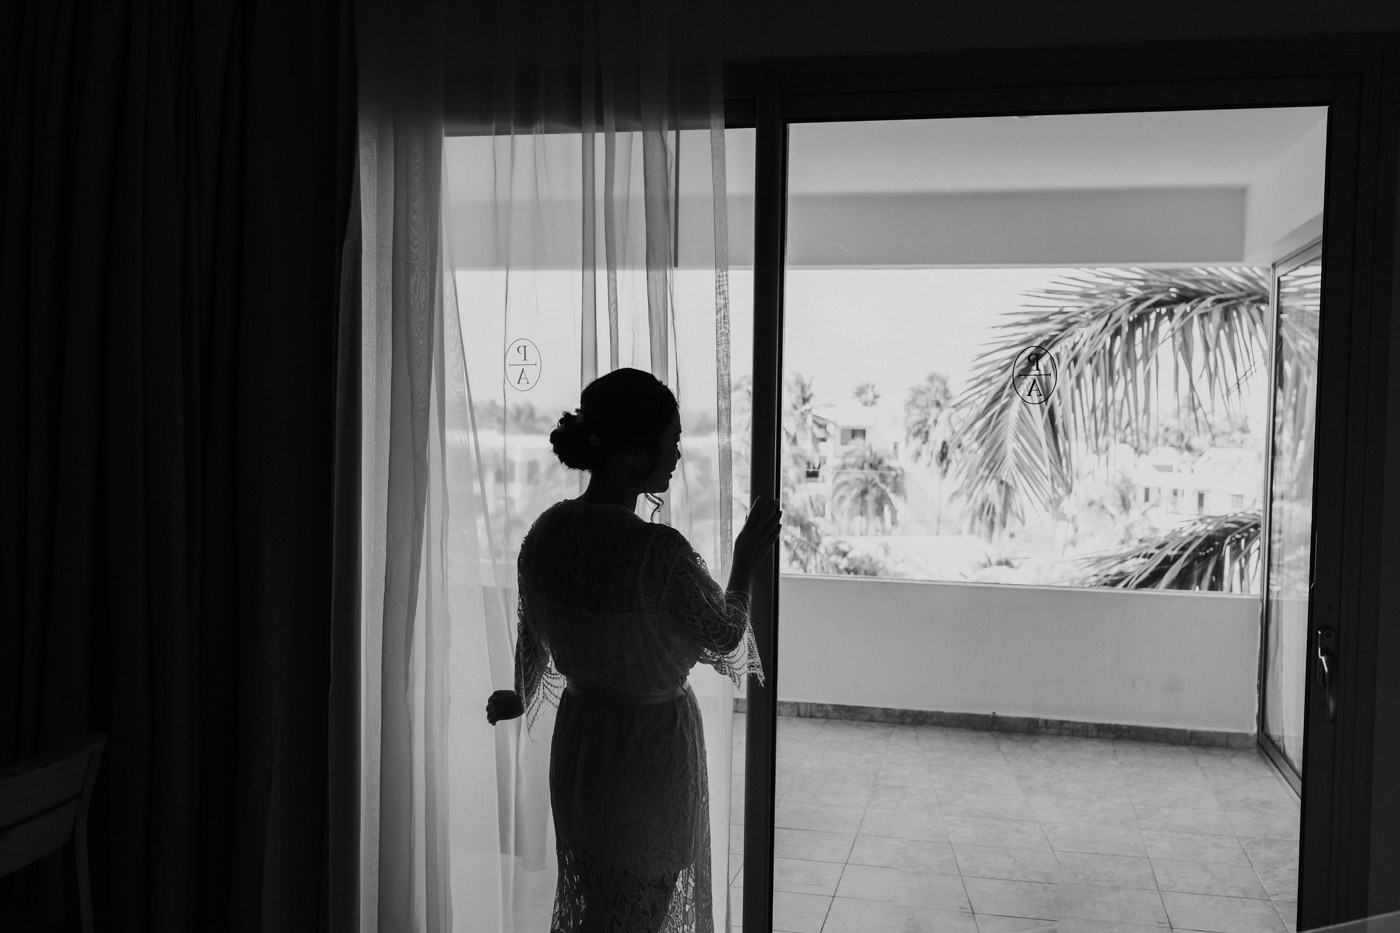 Isla Mujeres Wedding Photographer